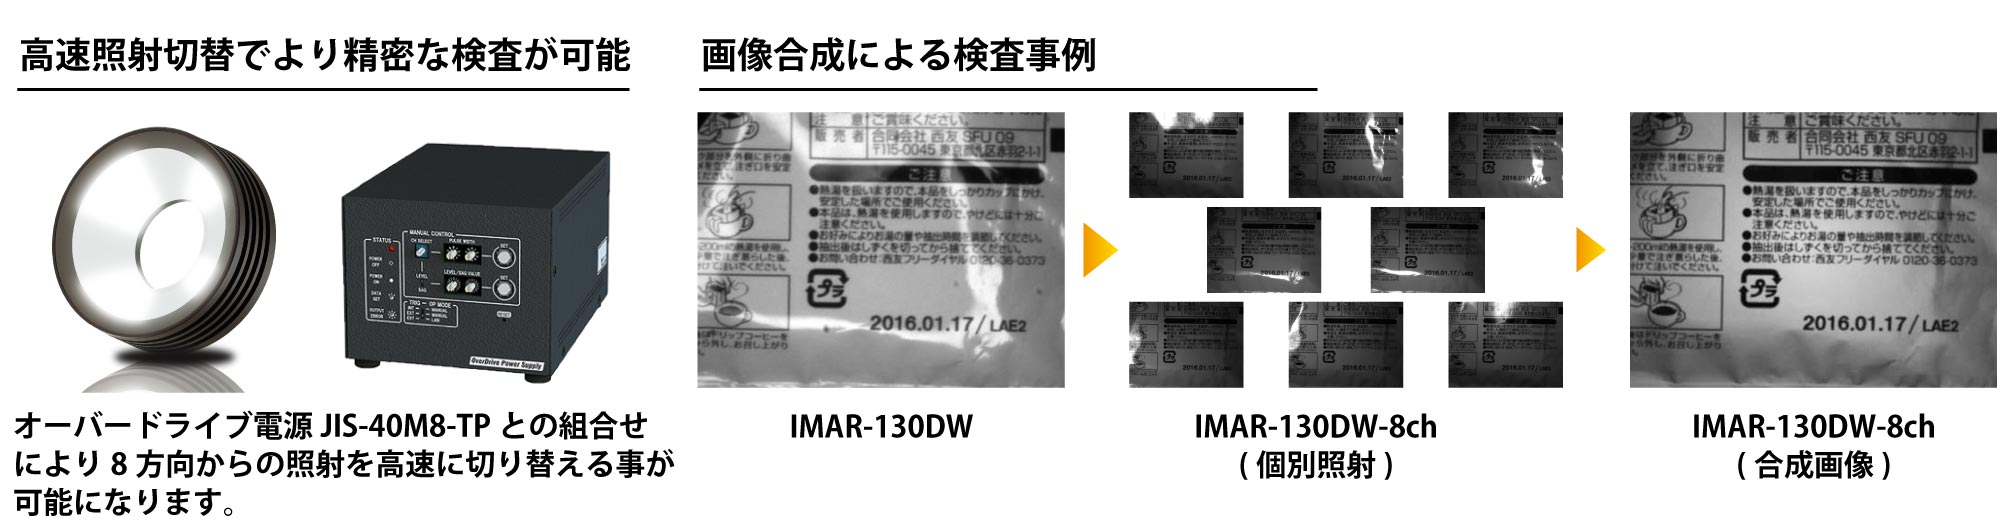 IMAR-D_-8CH Product Description 04